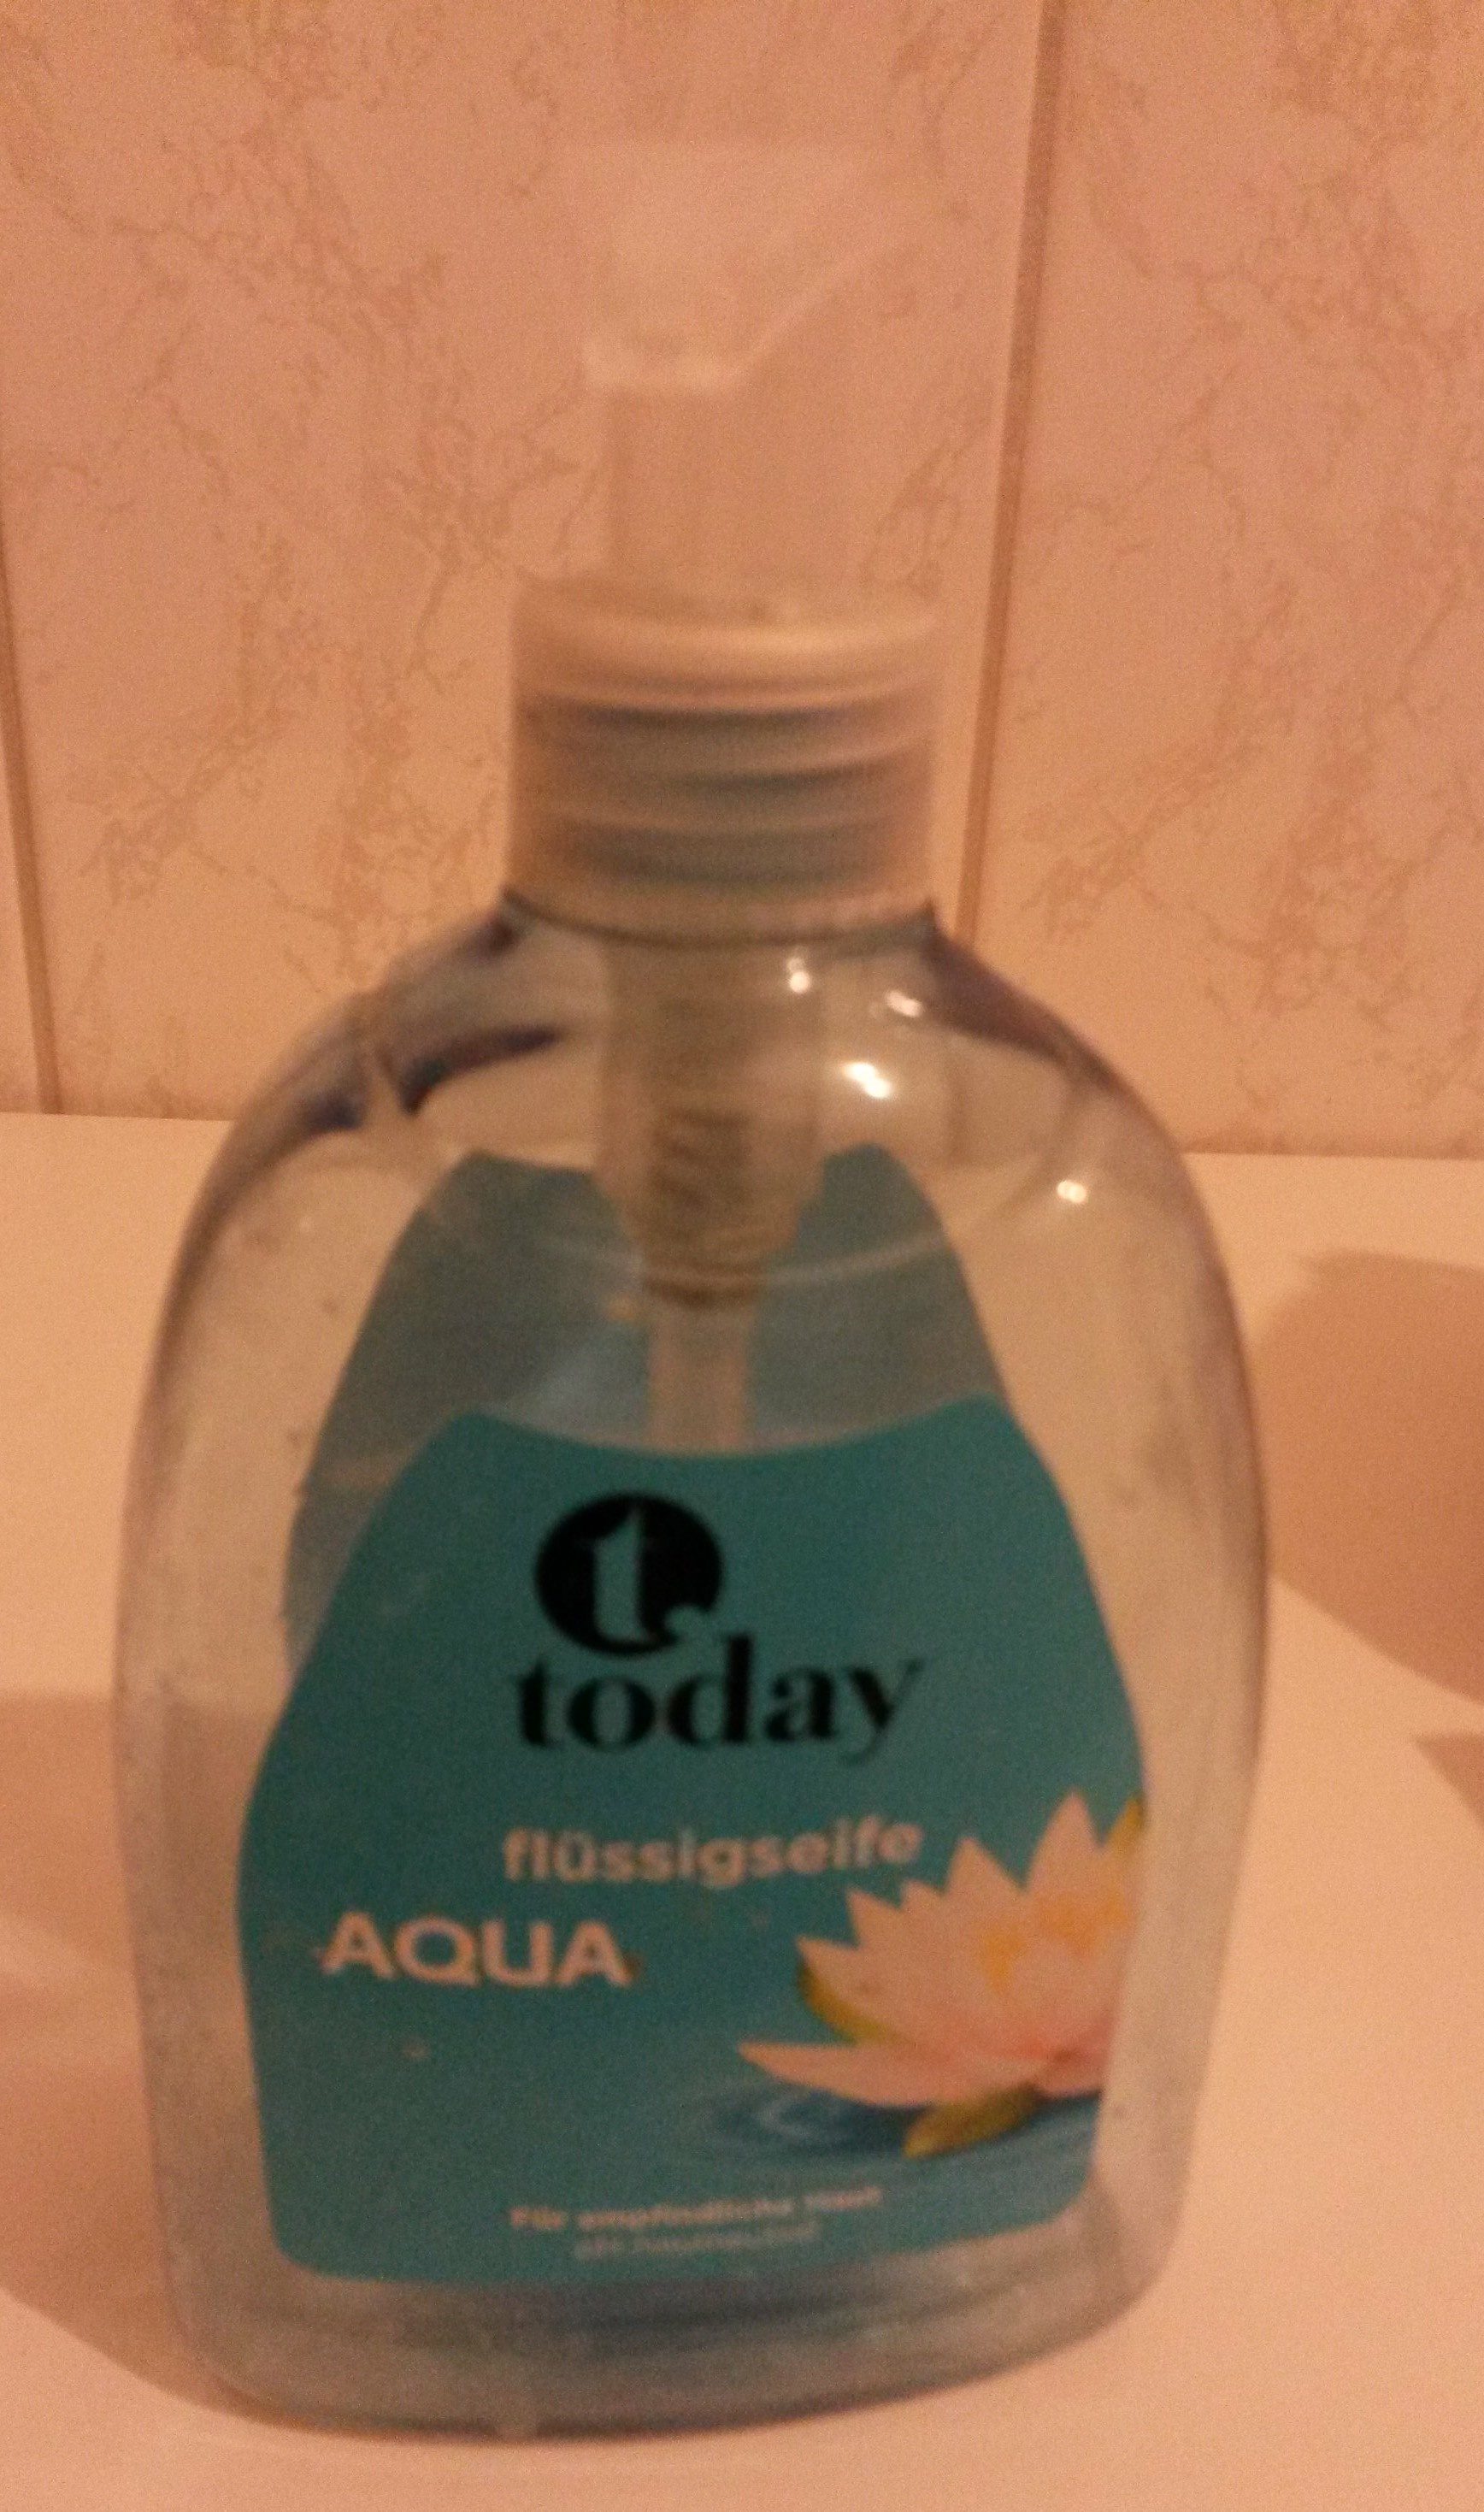 today Flüssigseife aqua - Product - de